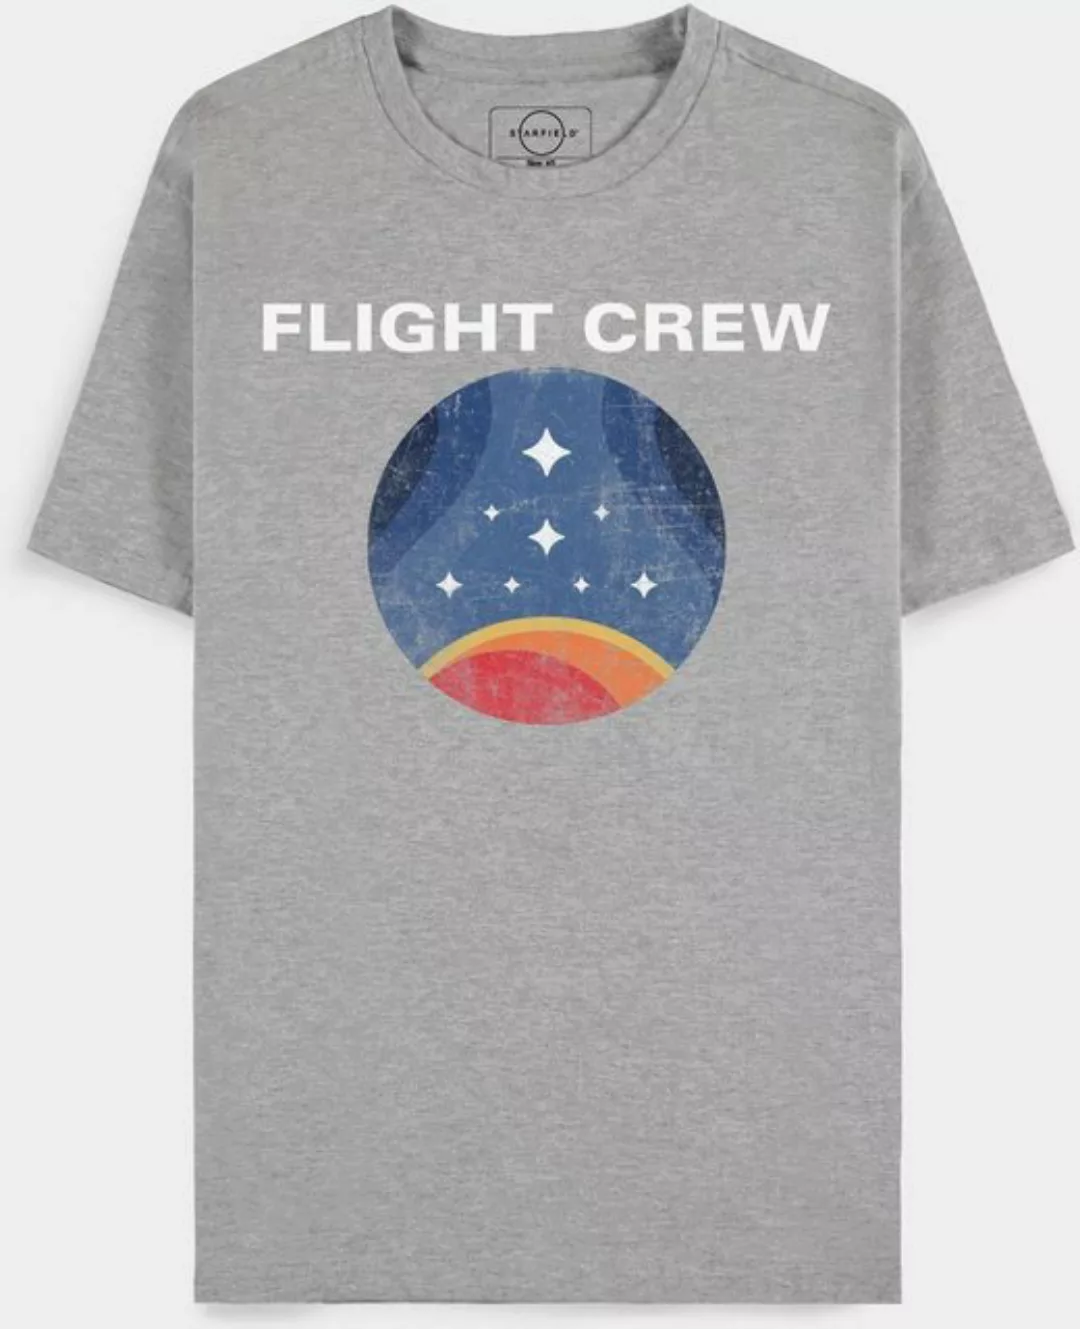 Starfield T-Shirt günstig online kaufen